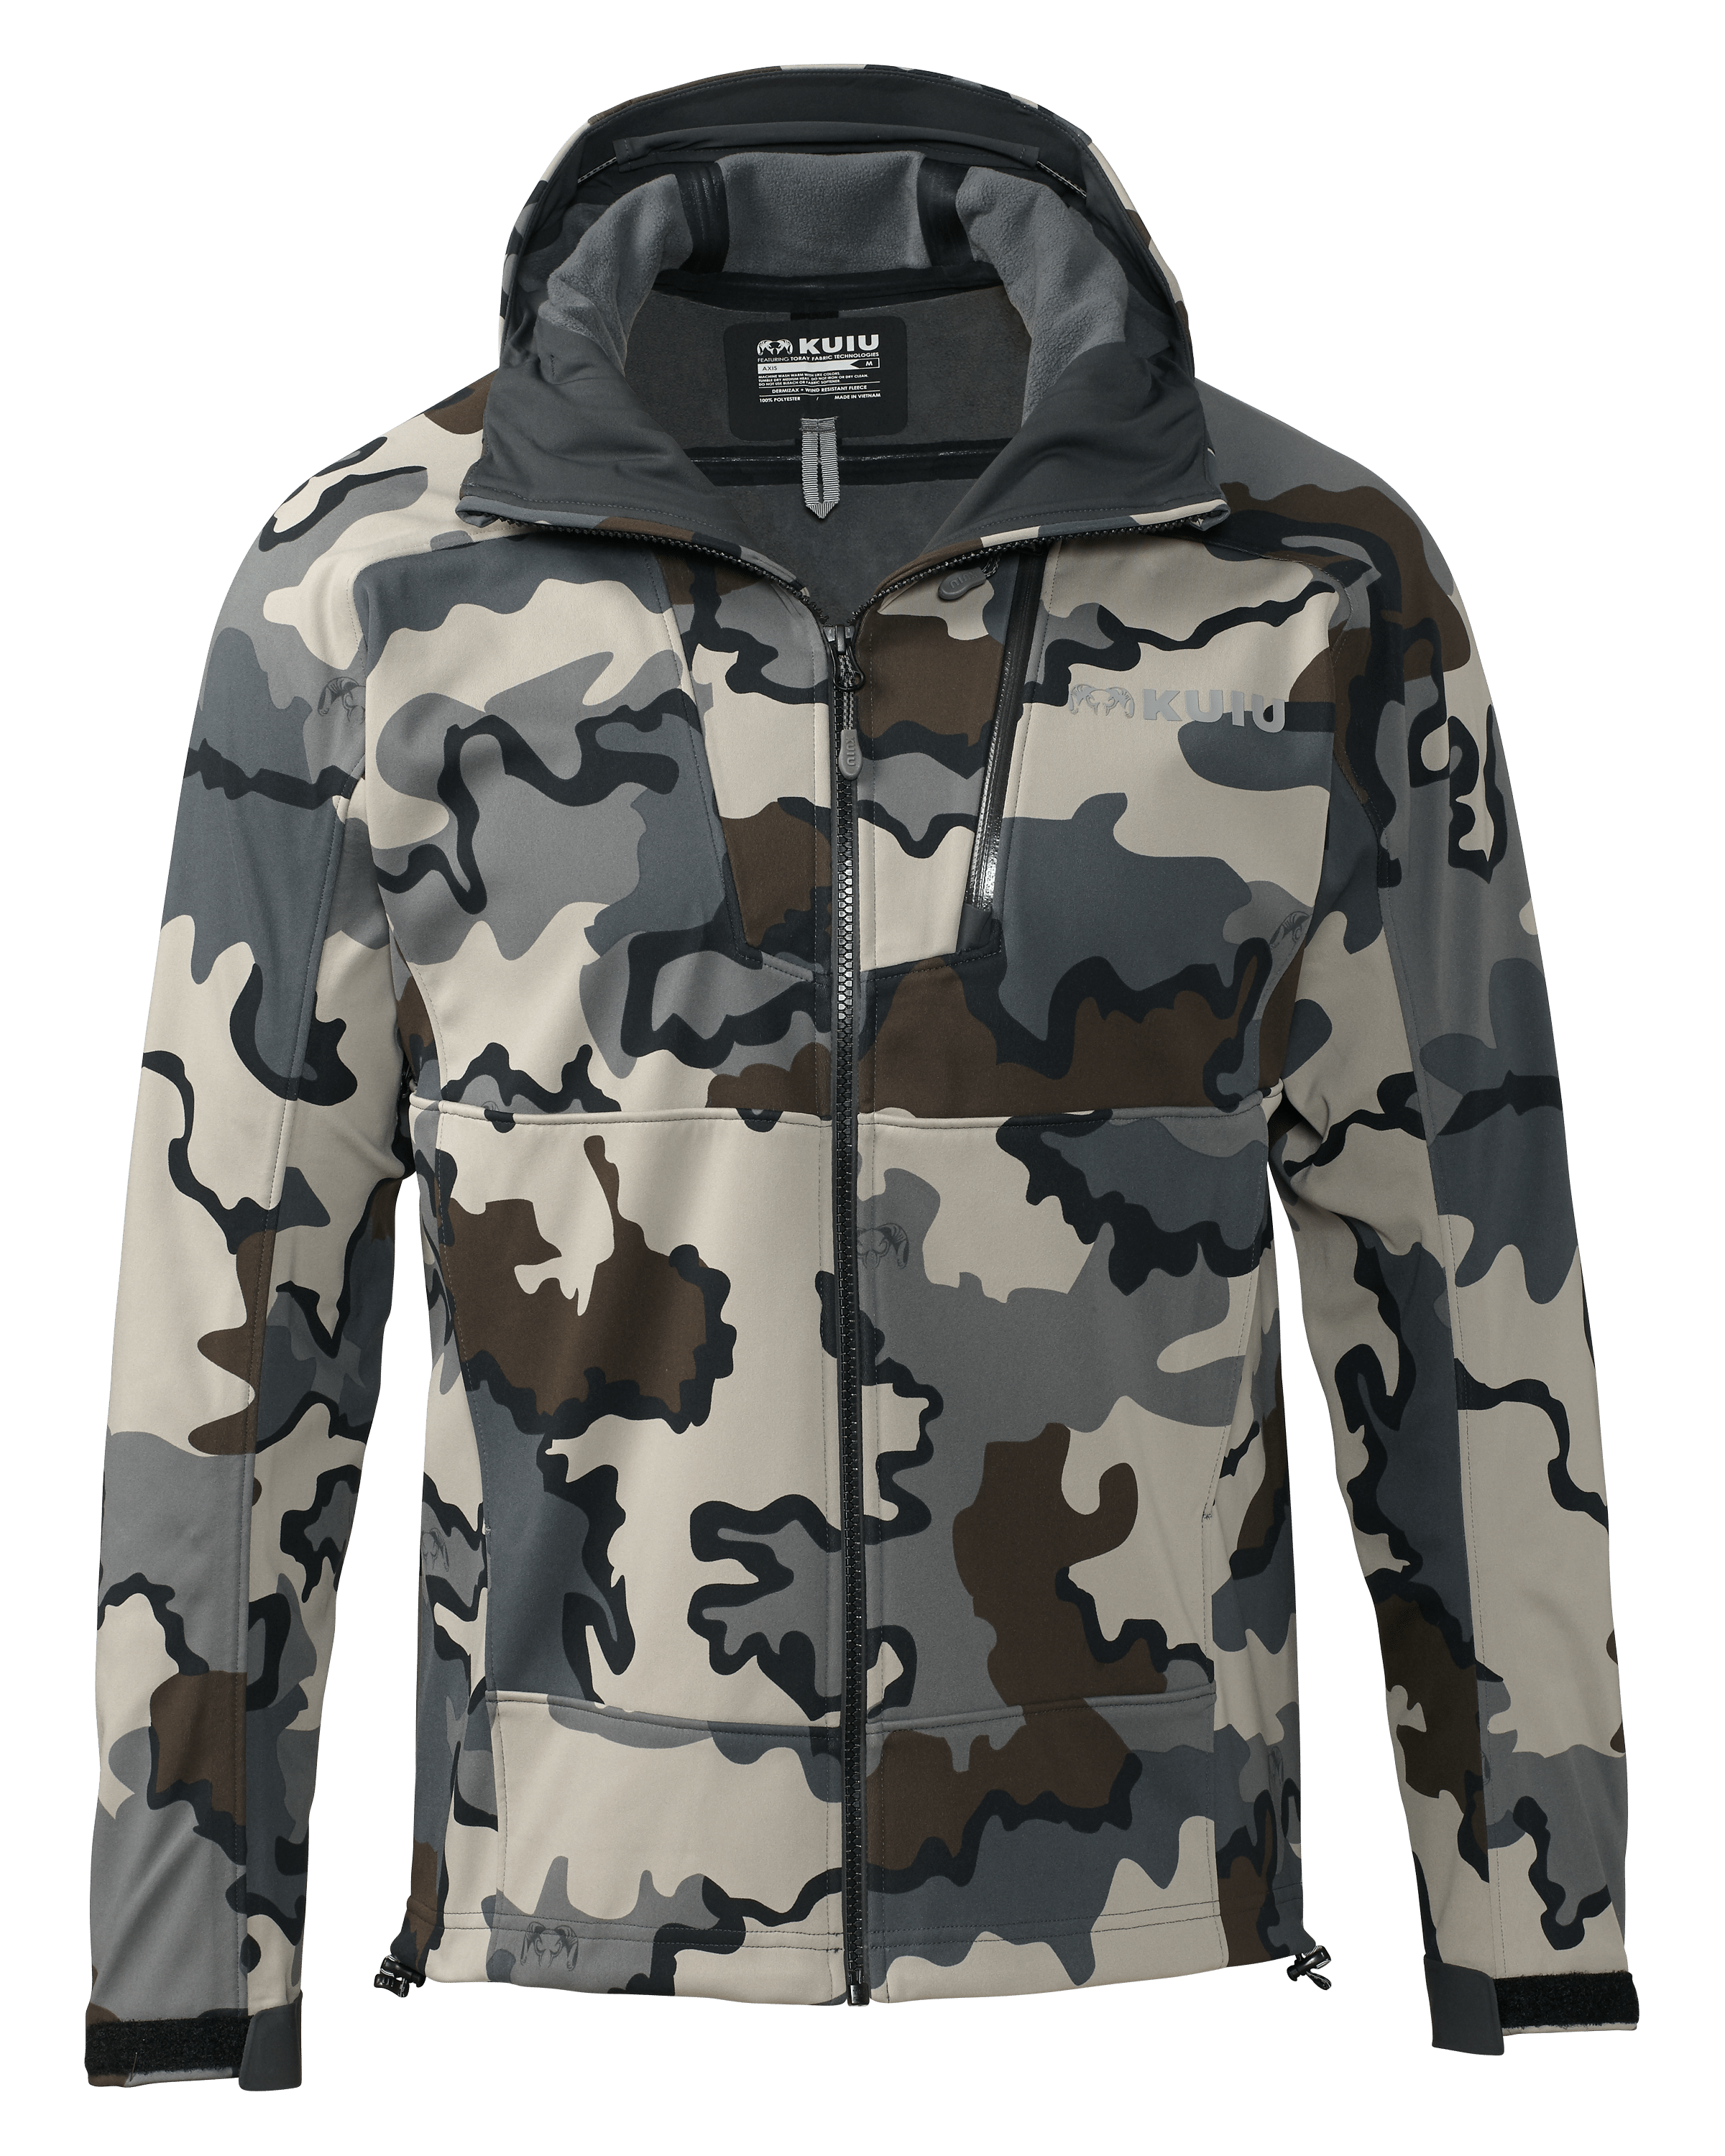 KUIU Axis Hybrid Hooded Hunting Jacket in Vias | Size Medium